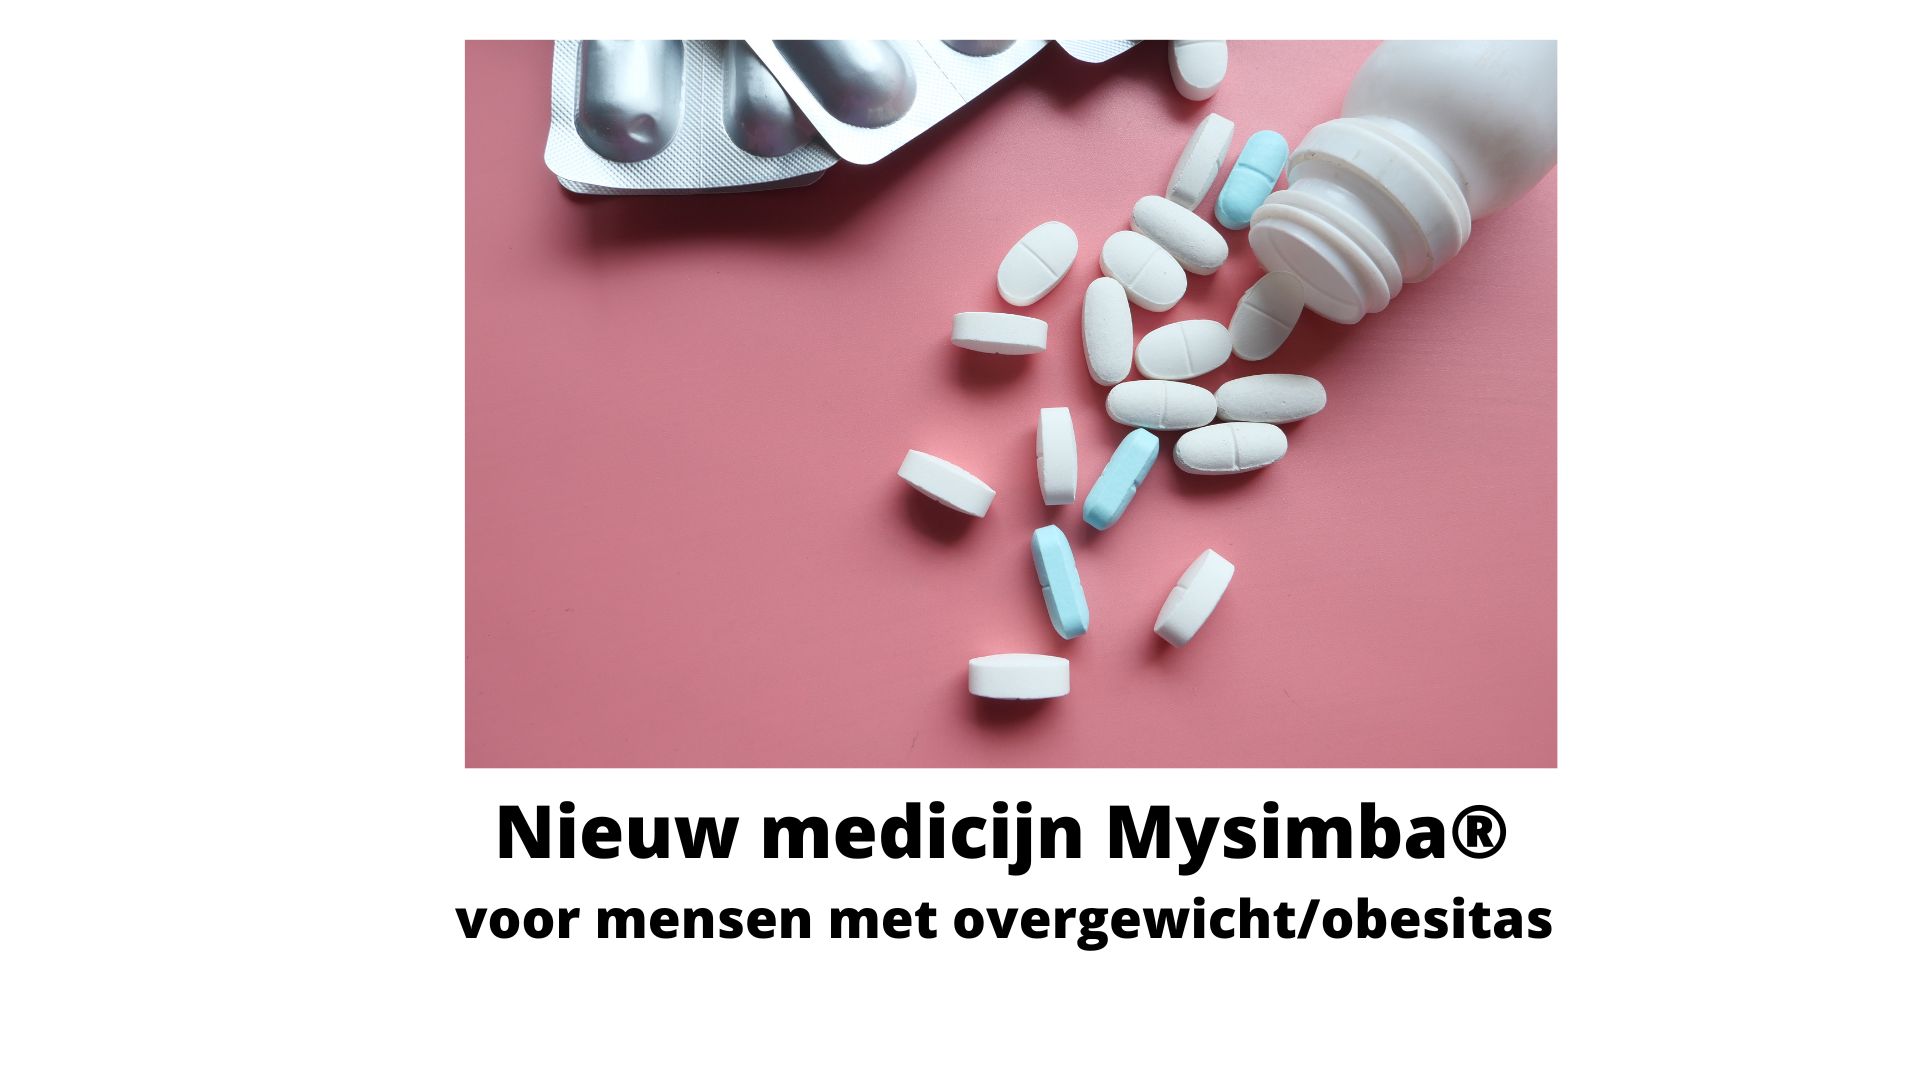 Nieuw medicijn Mysimba® voor mensen met overgewicht/obesitas per 1 augustus 202